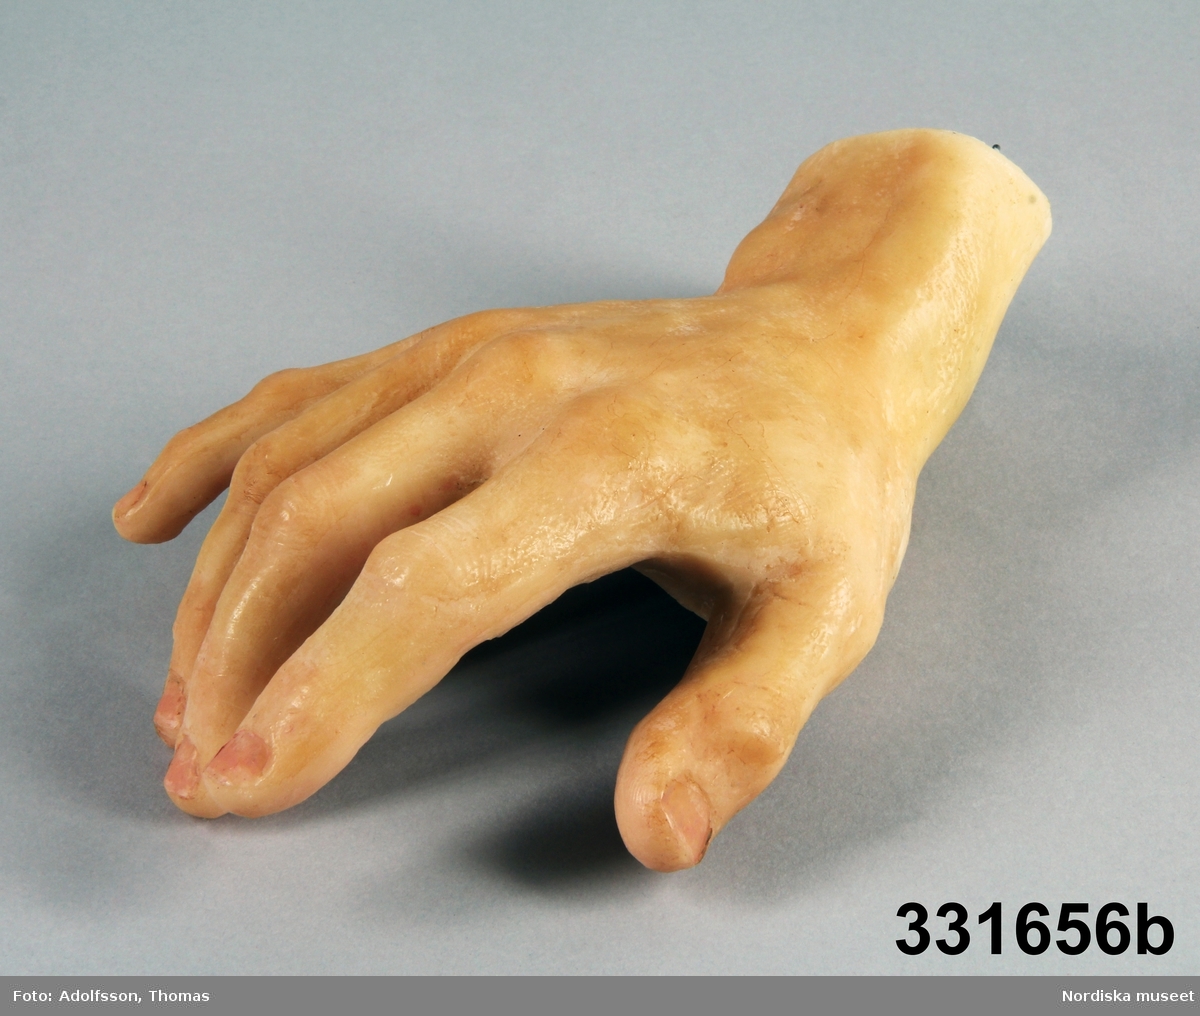 Ett par mycket realistiska manshänder skulpterade i vax efter levande modell. Fyllda i handlederna med gips med ett hål och en ståltrådsögla för fastsättning på en utställningsfigur.
/Berit Eldvik 2012-10-18